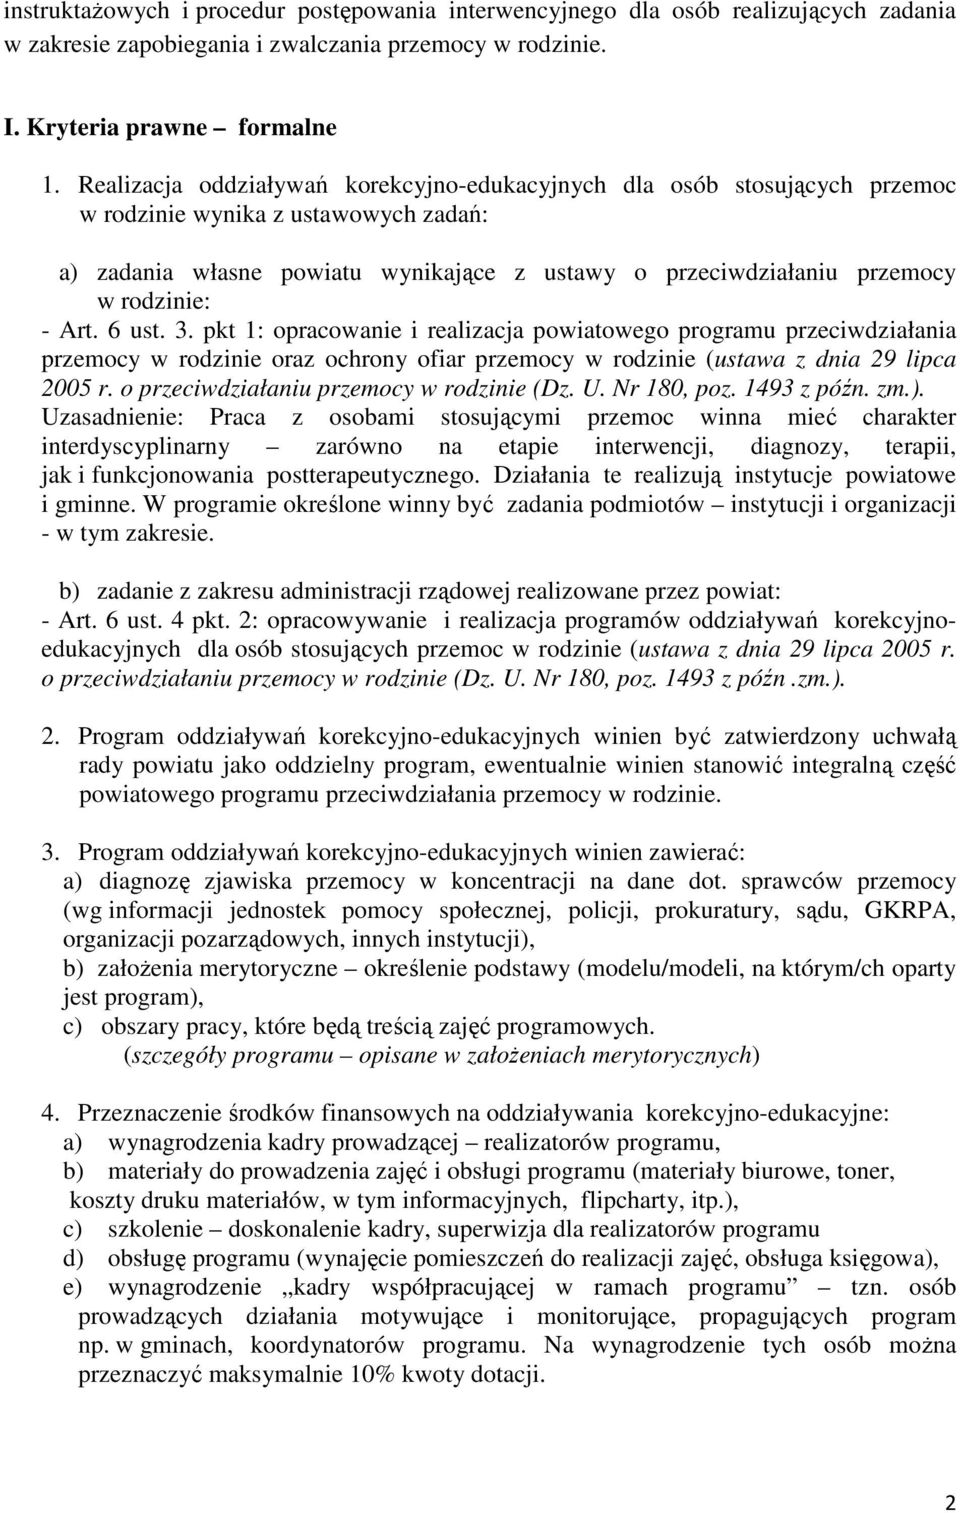 - Art. 6 ust. 3. pkt 1: opracowanie i realizacja powiatowego programu przeciwdziałania przemocy w rodzinie oraz ochrony ofiar przemocy w rodzinie (ustawa z dnia 29 lipca 2005 r.